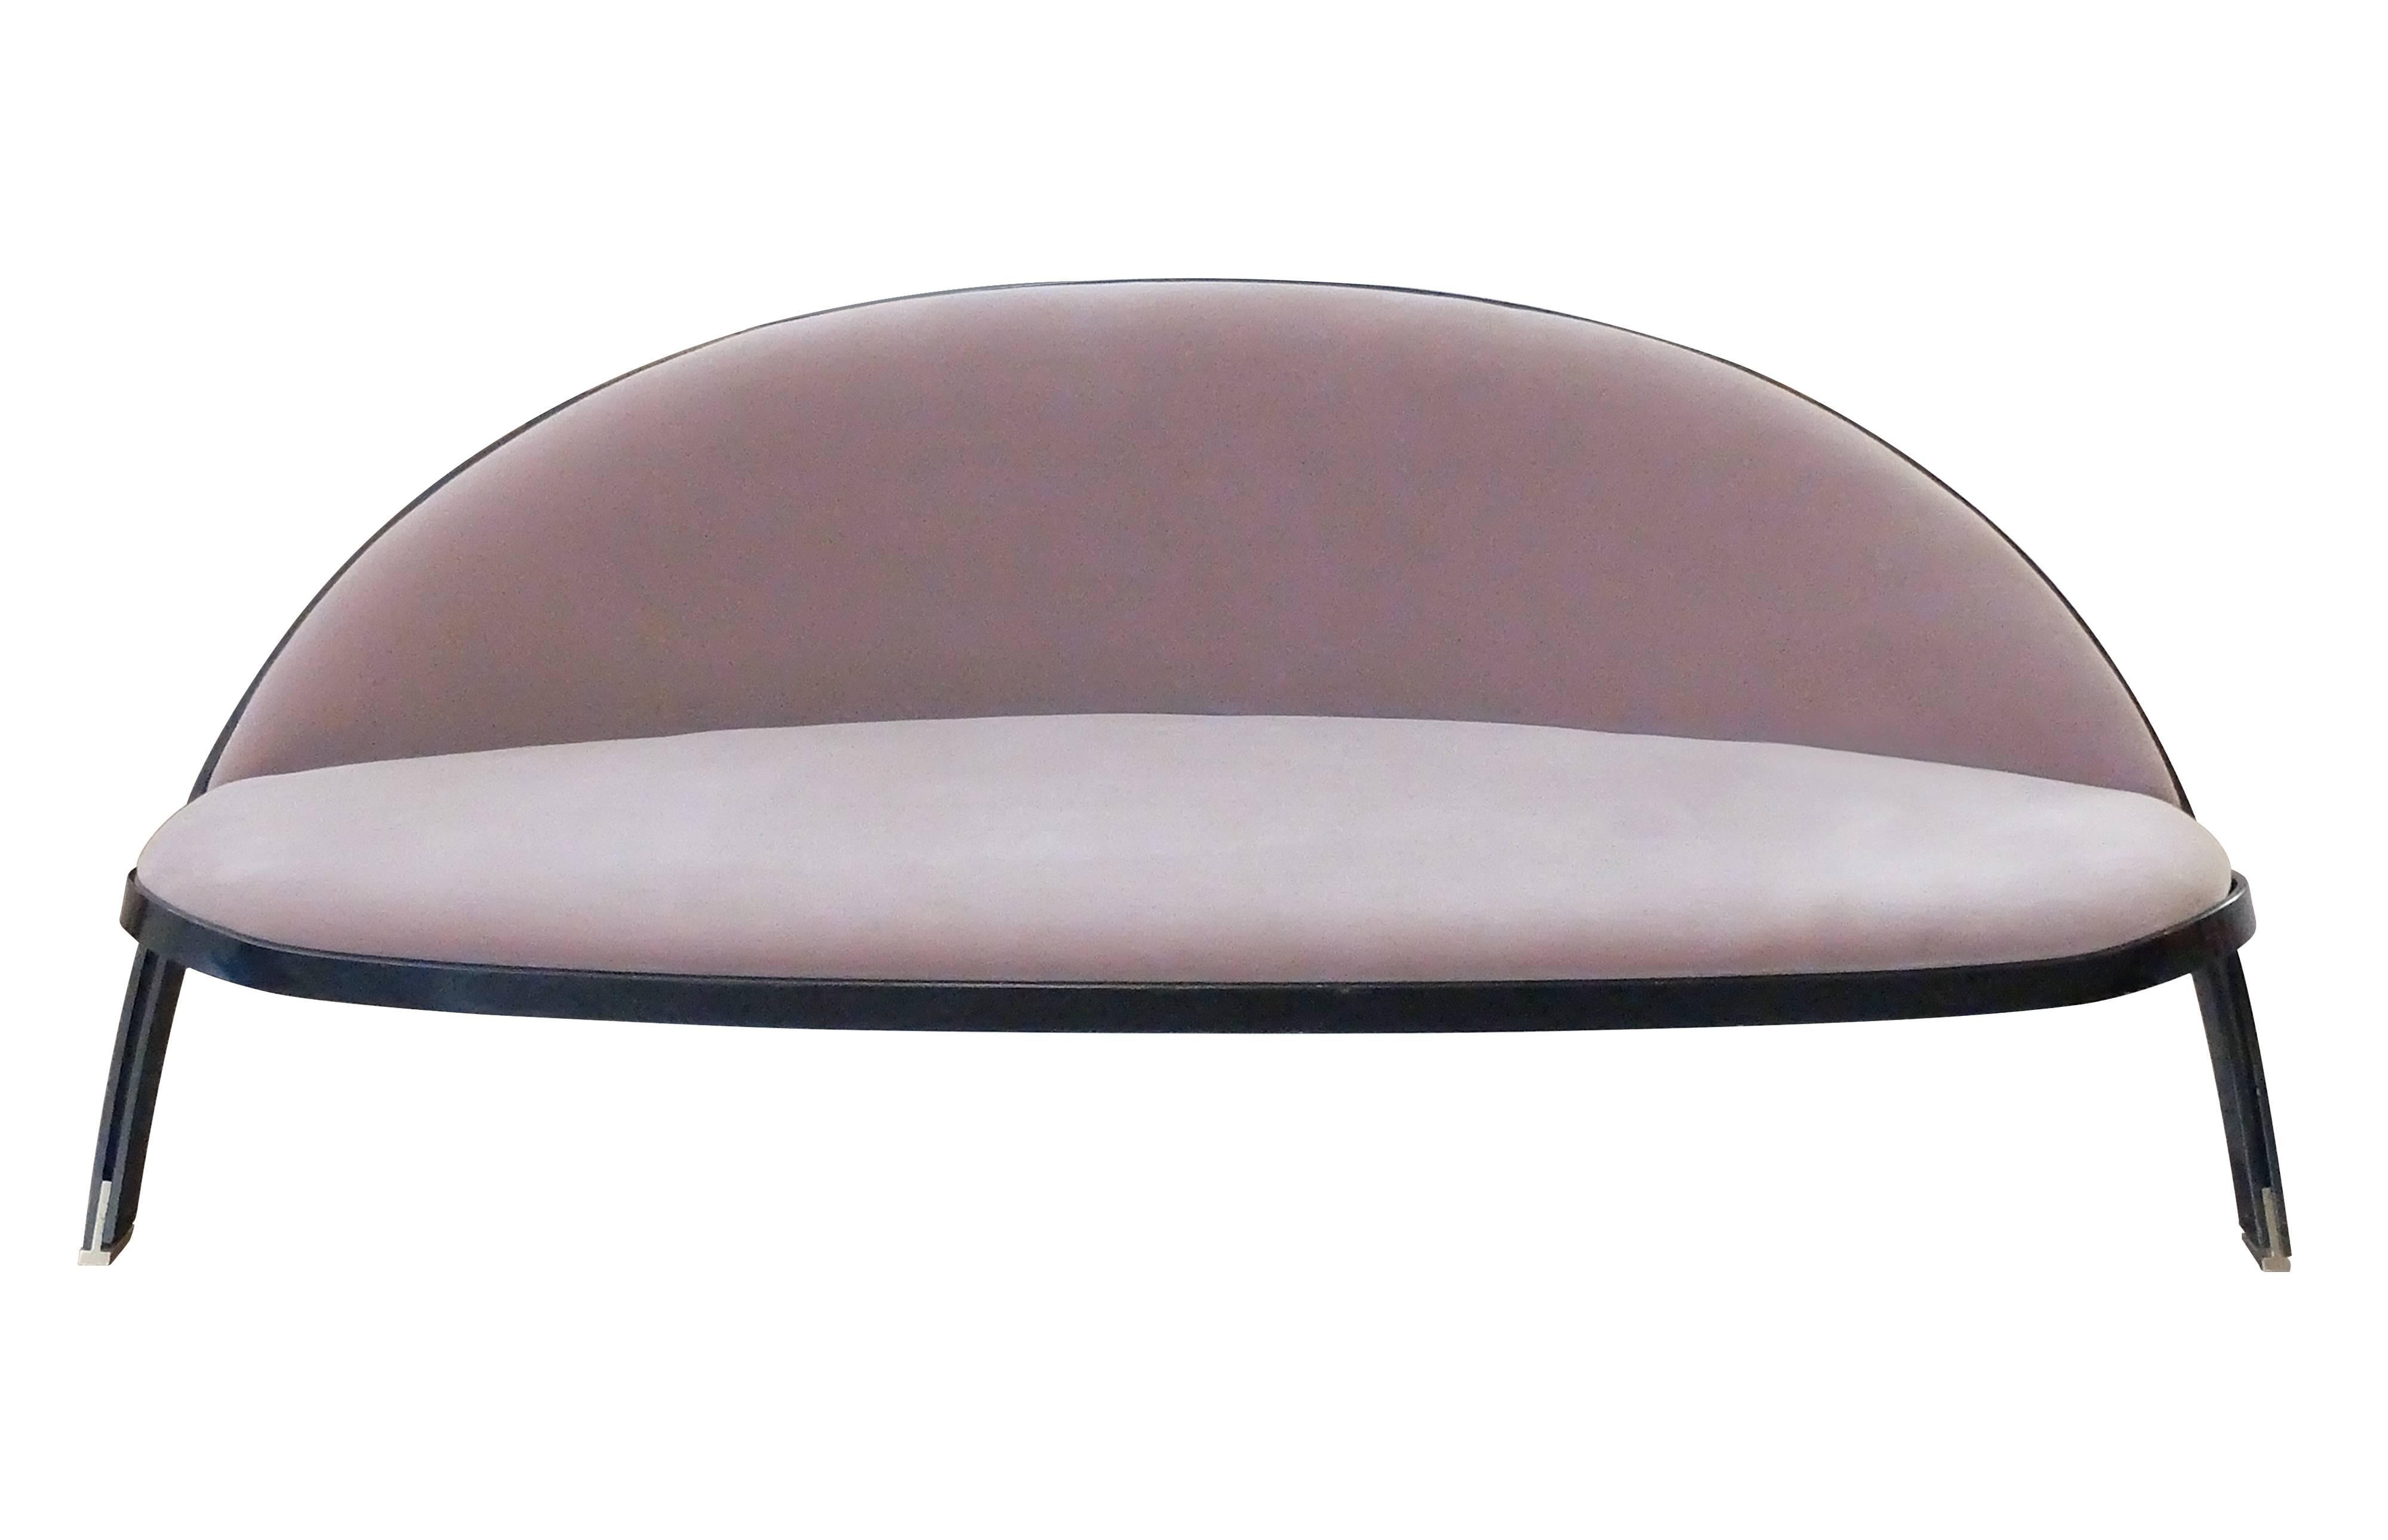 Dieses Sofa, das Gastone Rinaldi 1957 für die Firma Rima aus Padua (Italien) entworfen hat, zeichnet sich durch seine handwerkliche Reinheit aus. Es hat einen einfachen, aber raffinierten Metallrahmen in Form einer Armbrust, der damals als